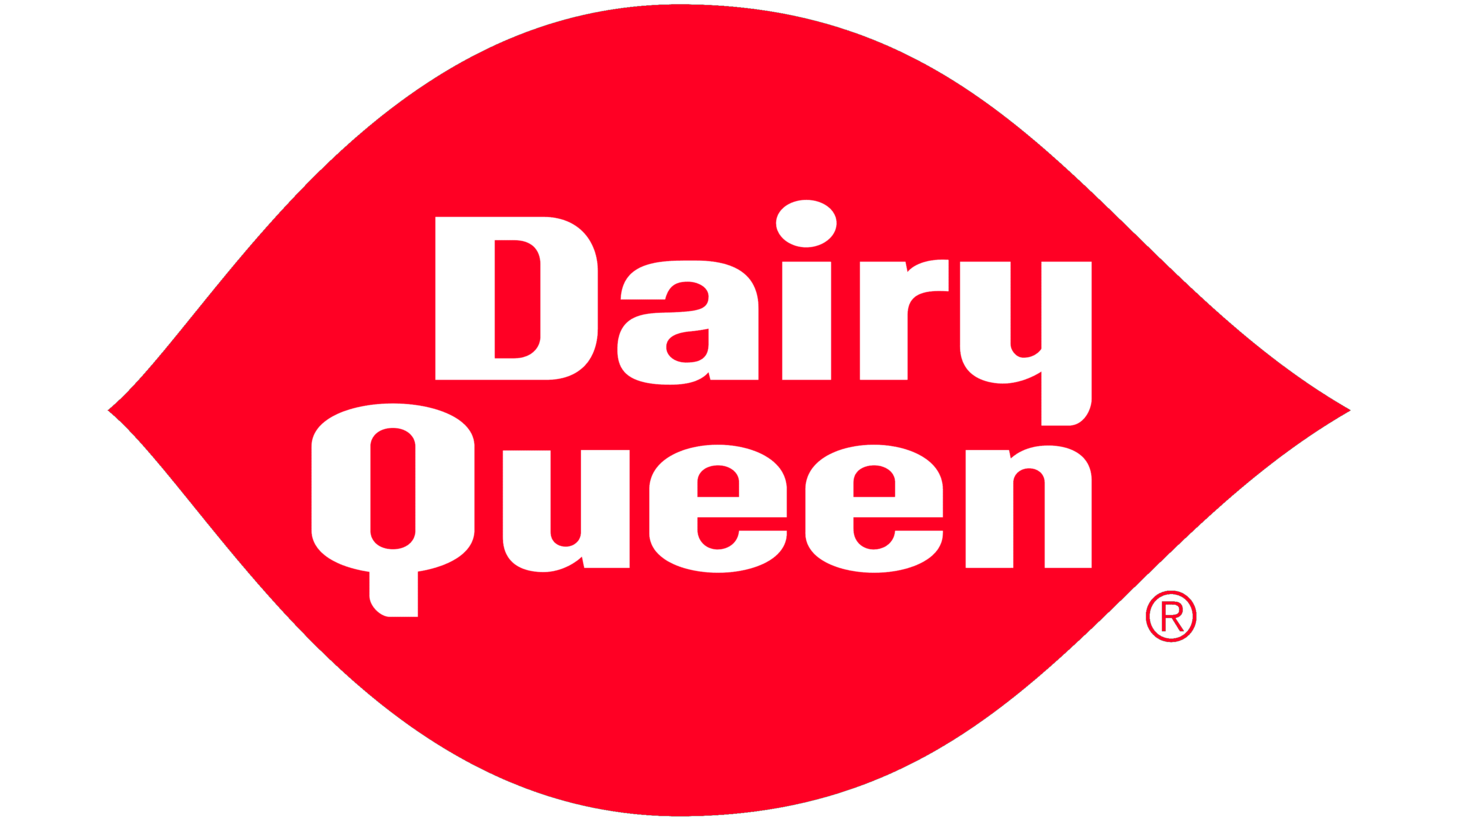 Dairy queen sign 1960